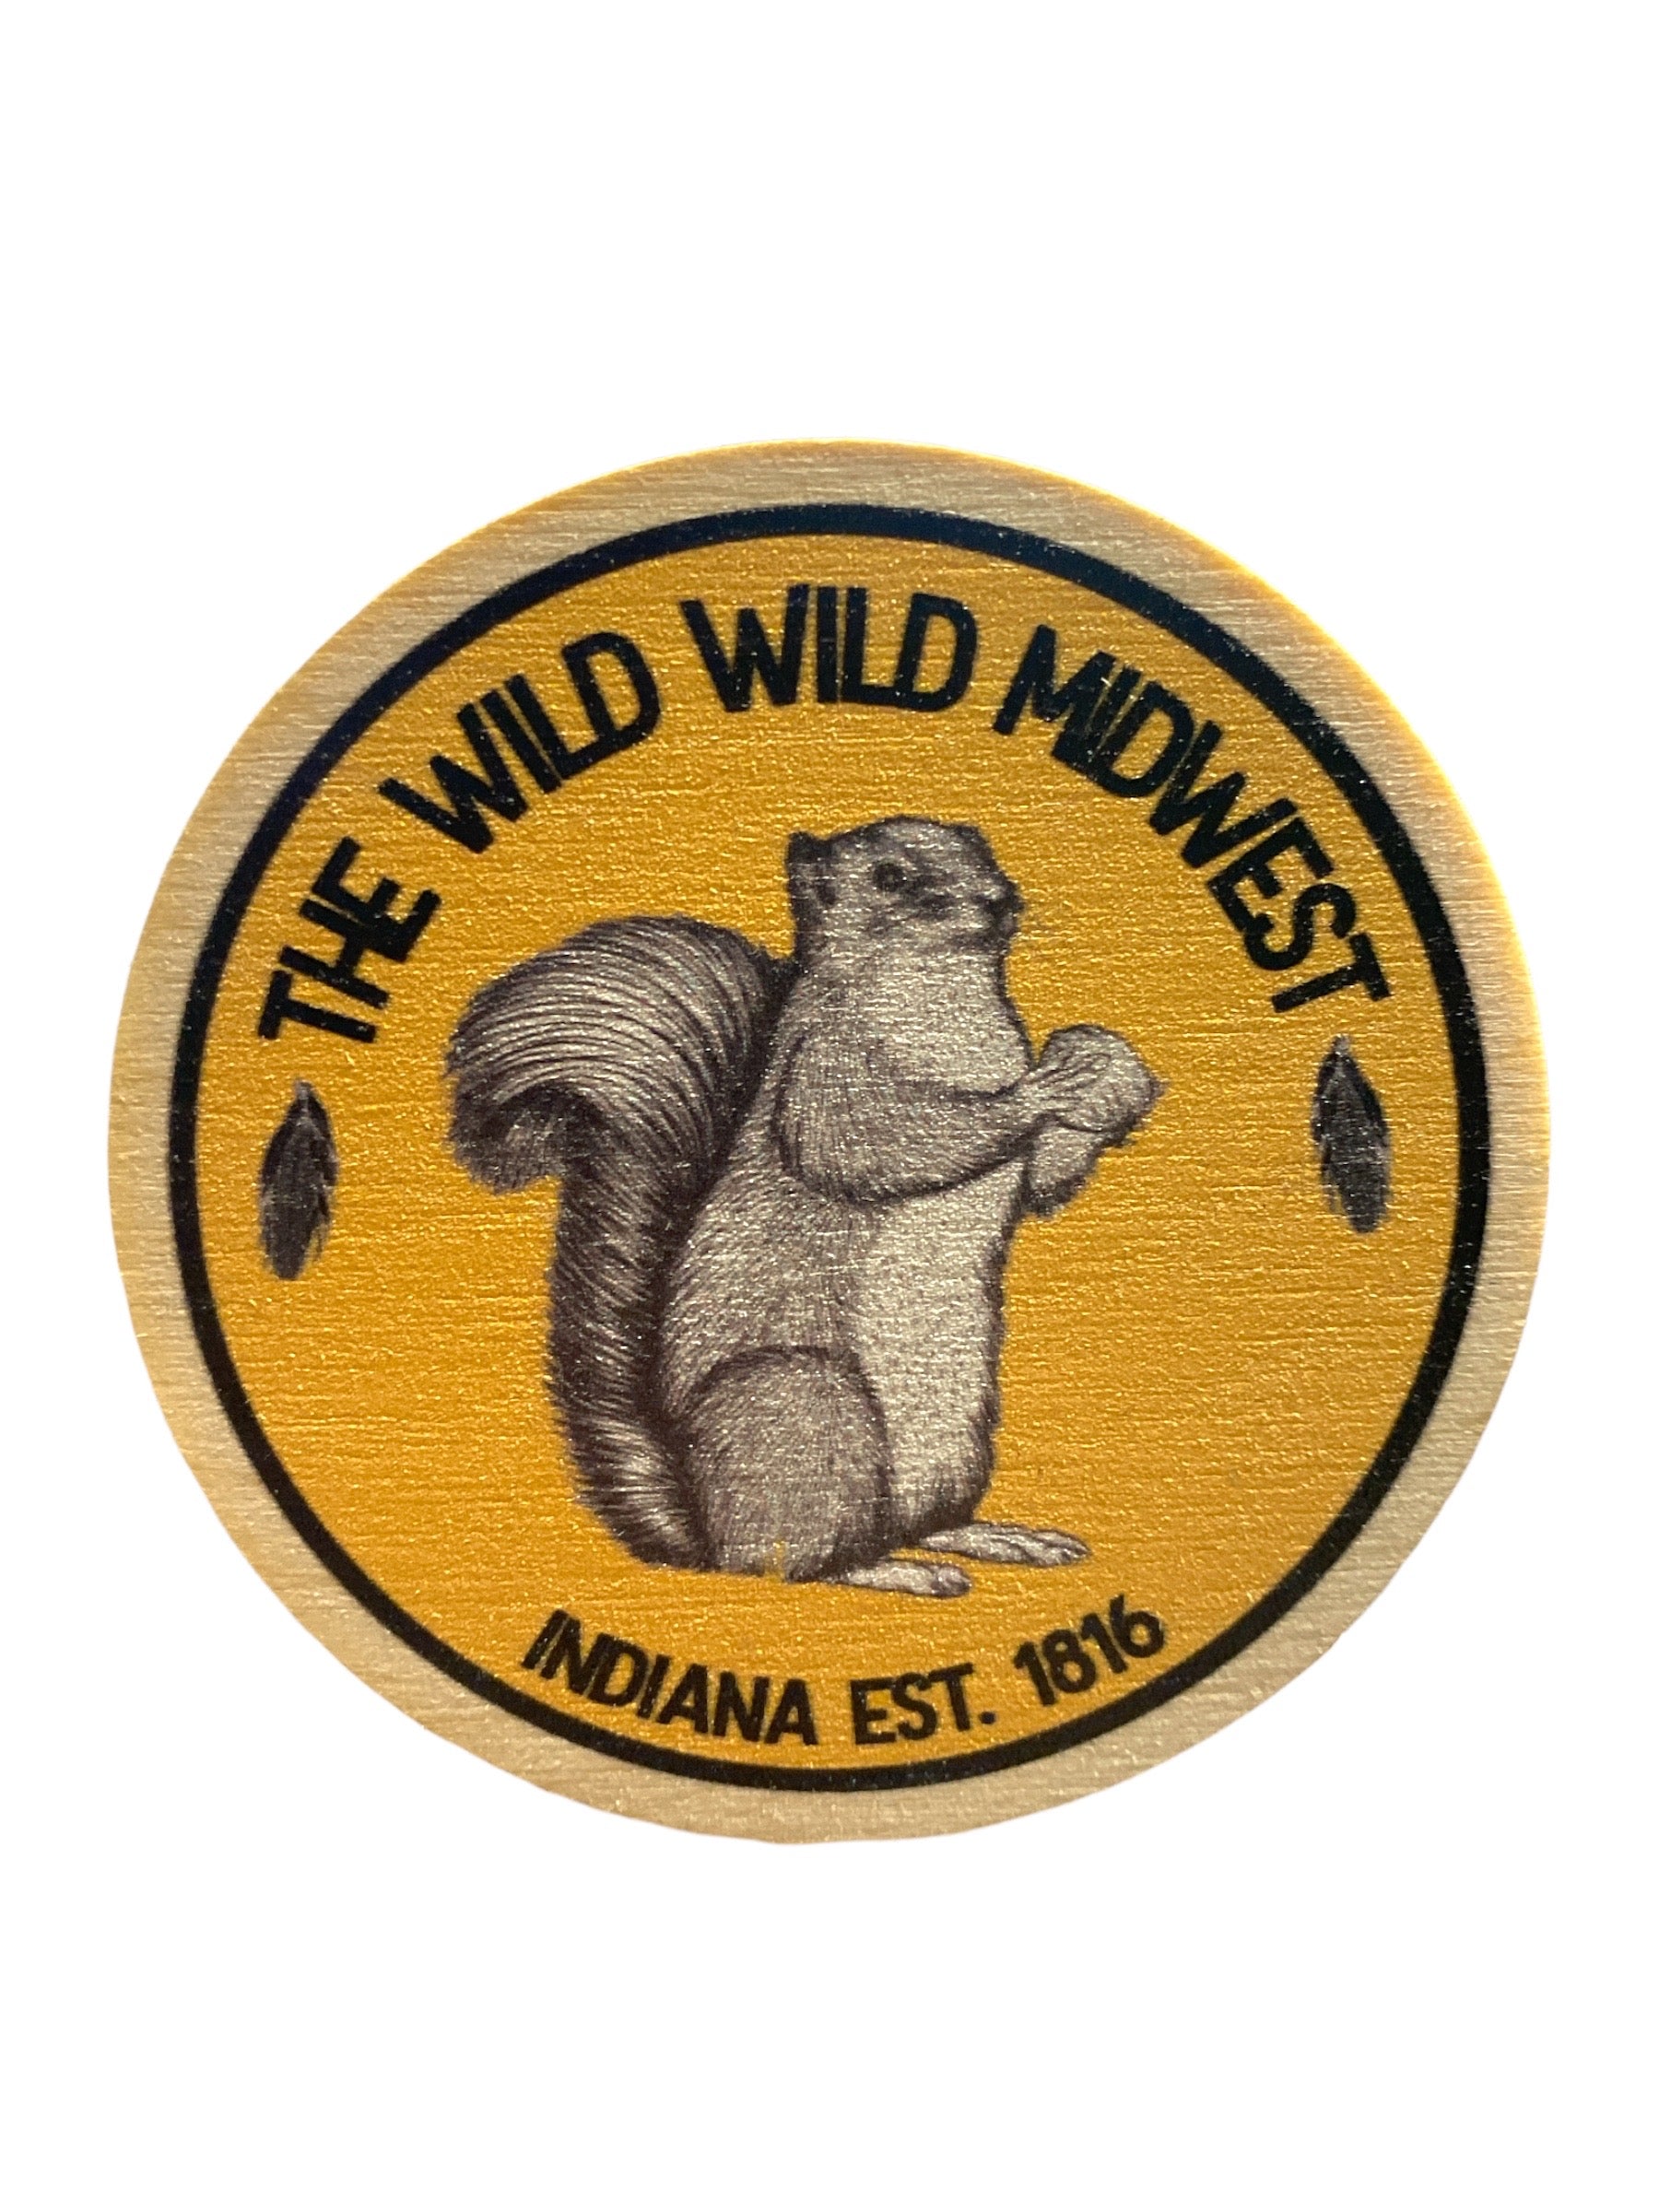 wild wild midwest squirrel magnet